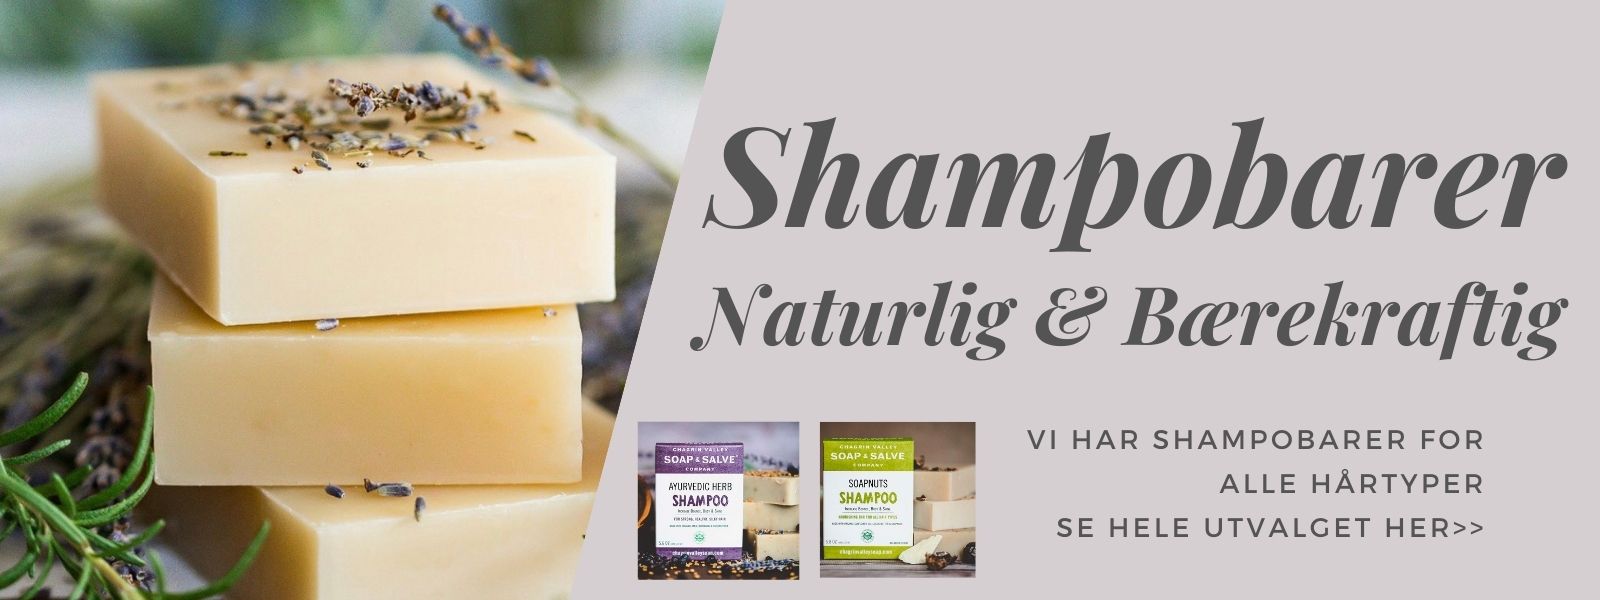 sjampo bar, shampo bar, shampoo bar, økologisk sjampo, naturlig shampoo, økologisk hårpleie, shampoo mot flass, hårpleieprodukter, økologisk shampo, 